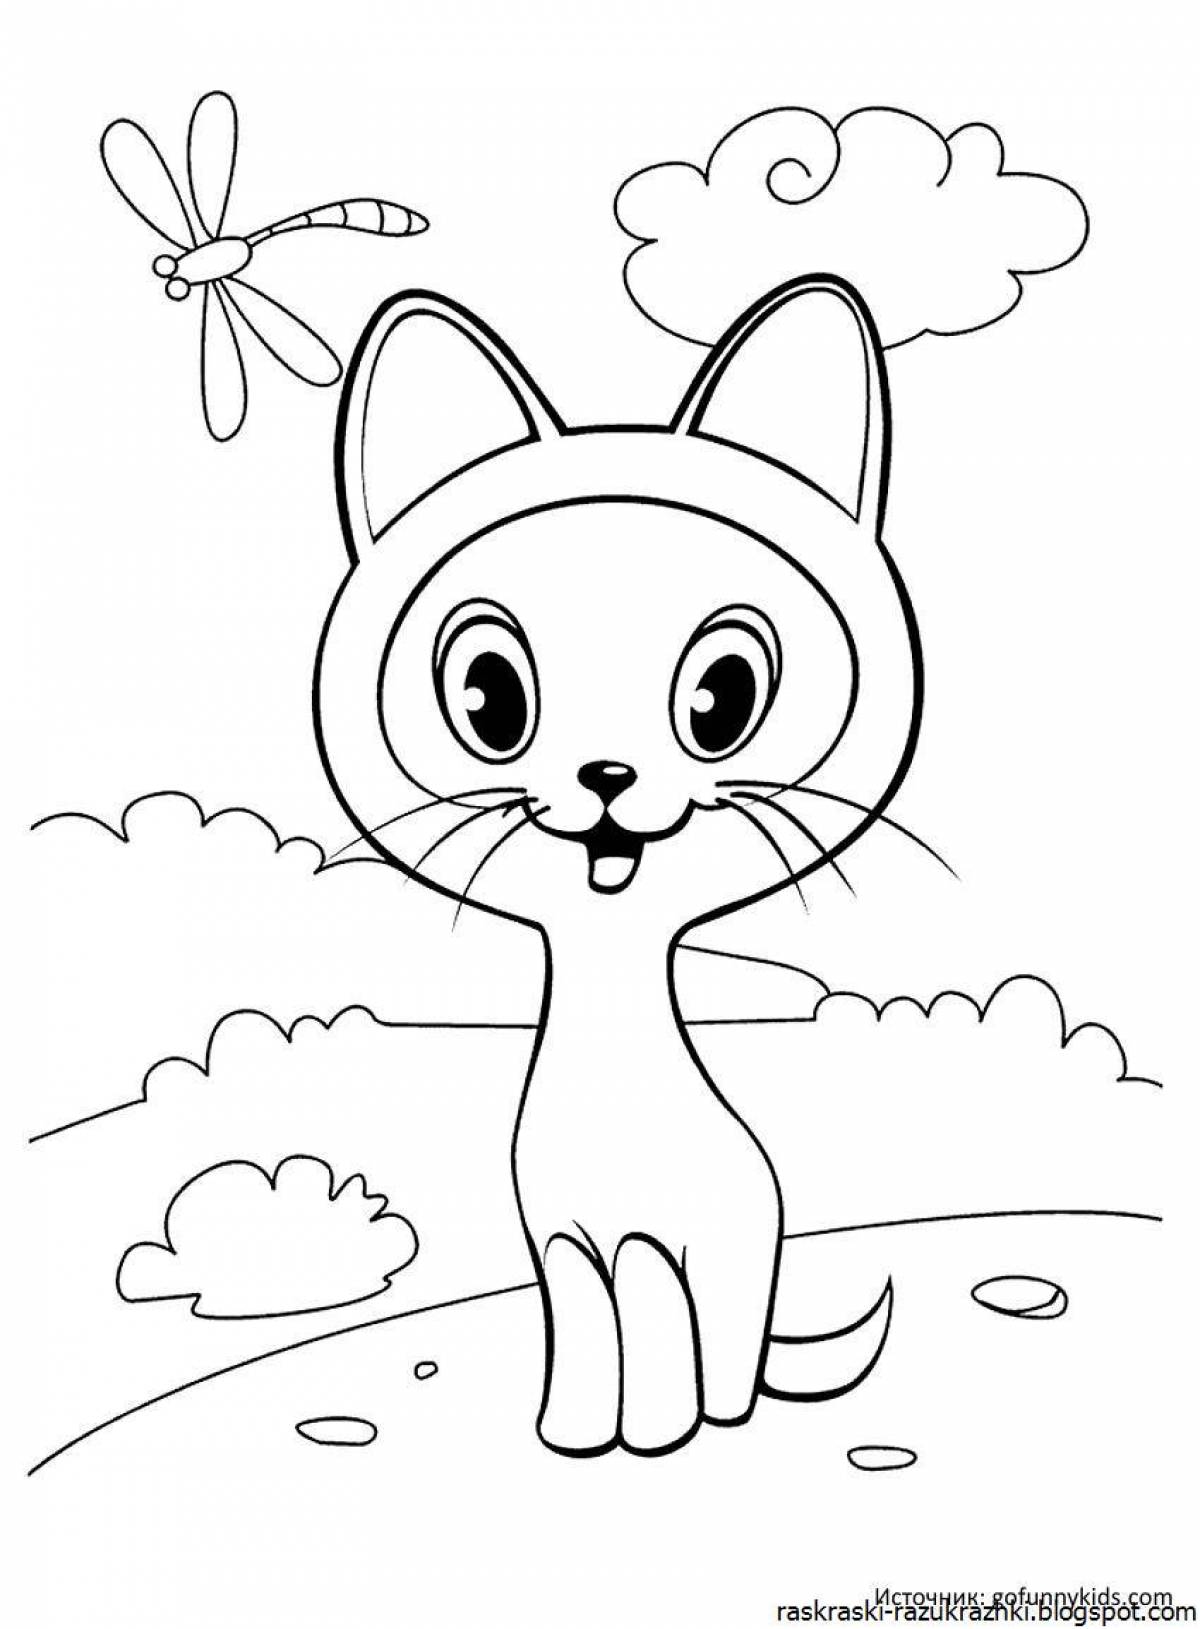 Раскраска симпатичный носатый котенок для детей